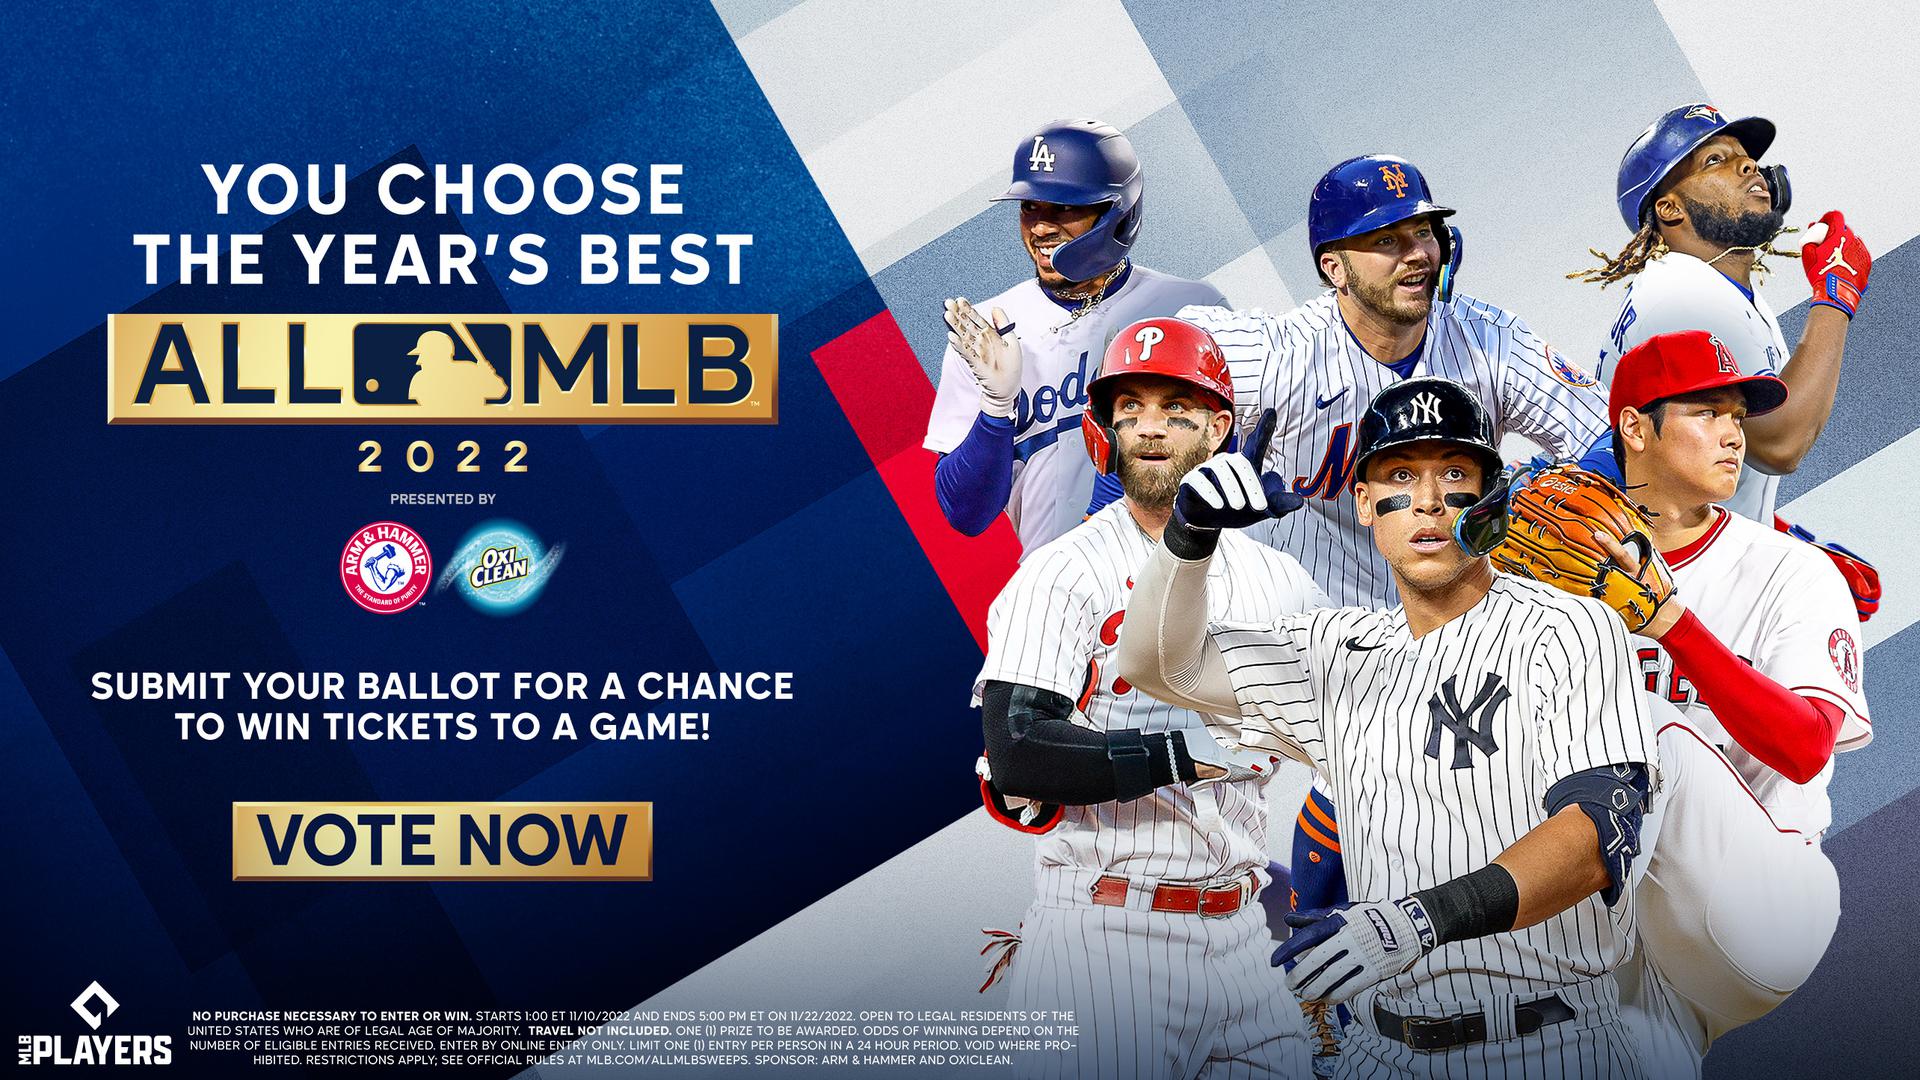 Vote for All-MLB team